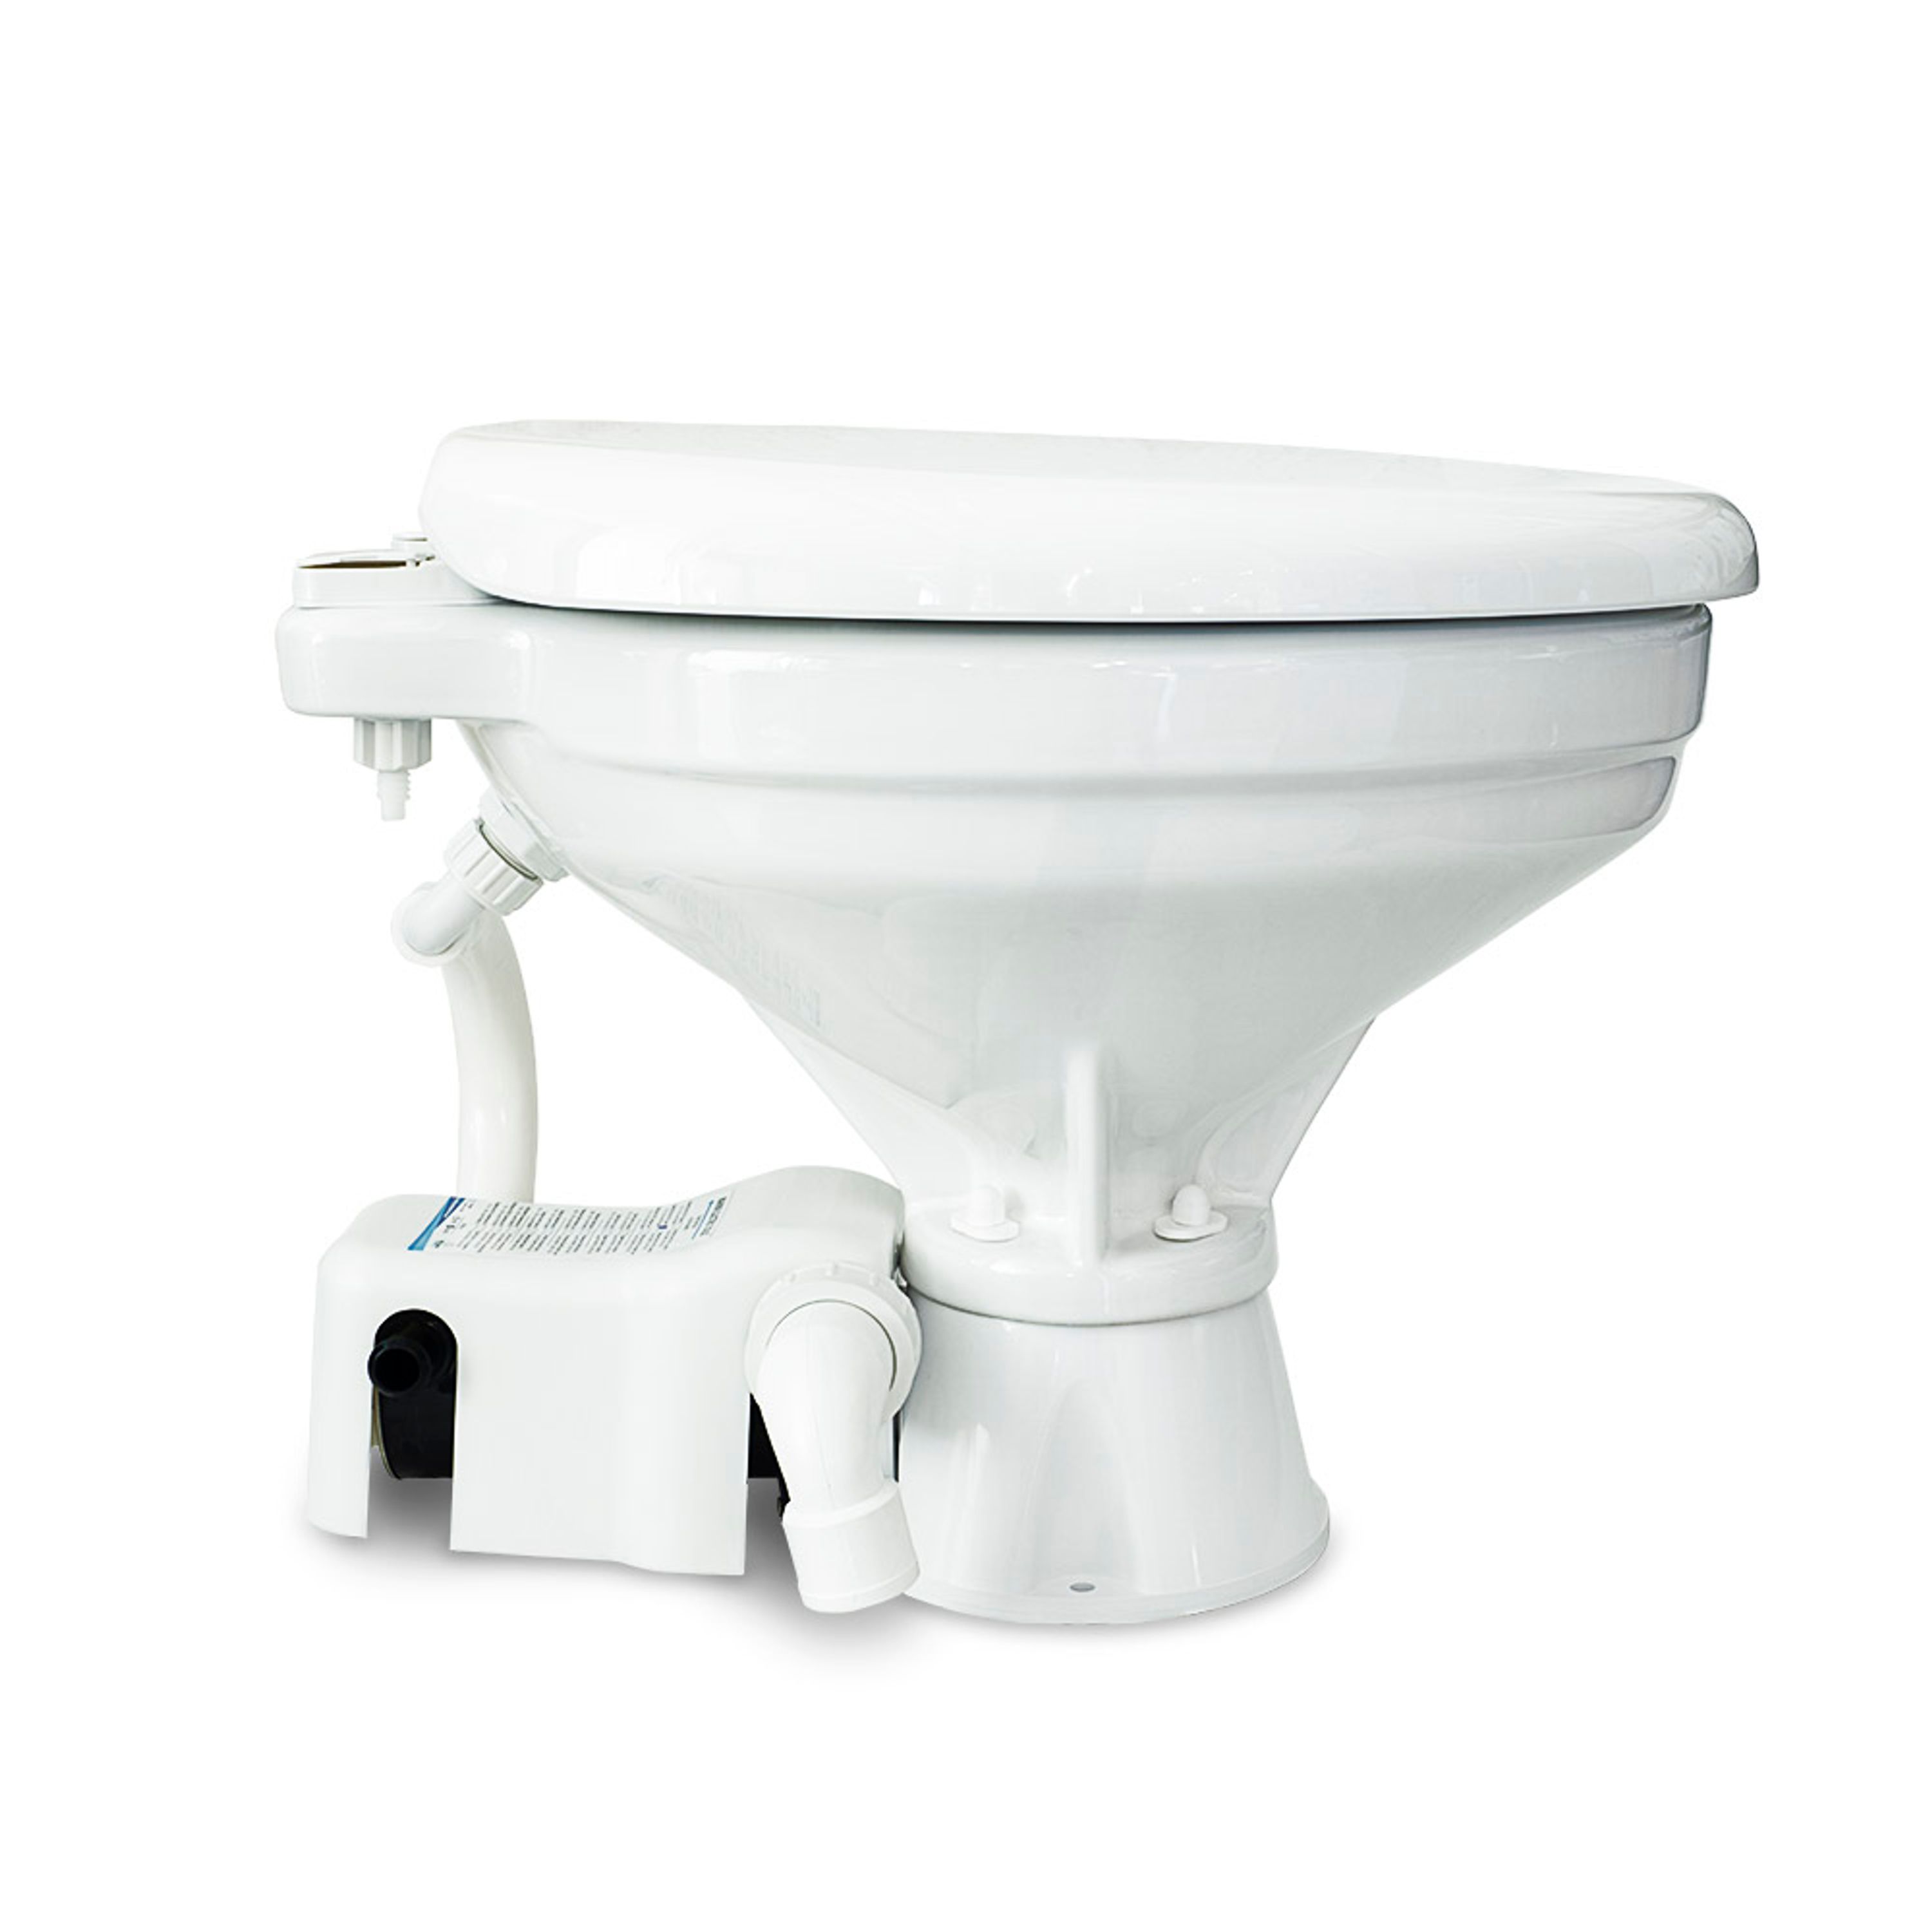 snorkel Støt Er Standard Evo elektrisk toilet - Eltoiletter